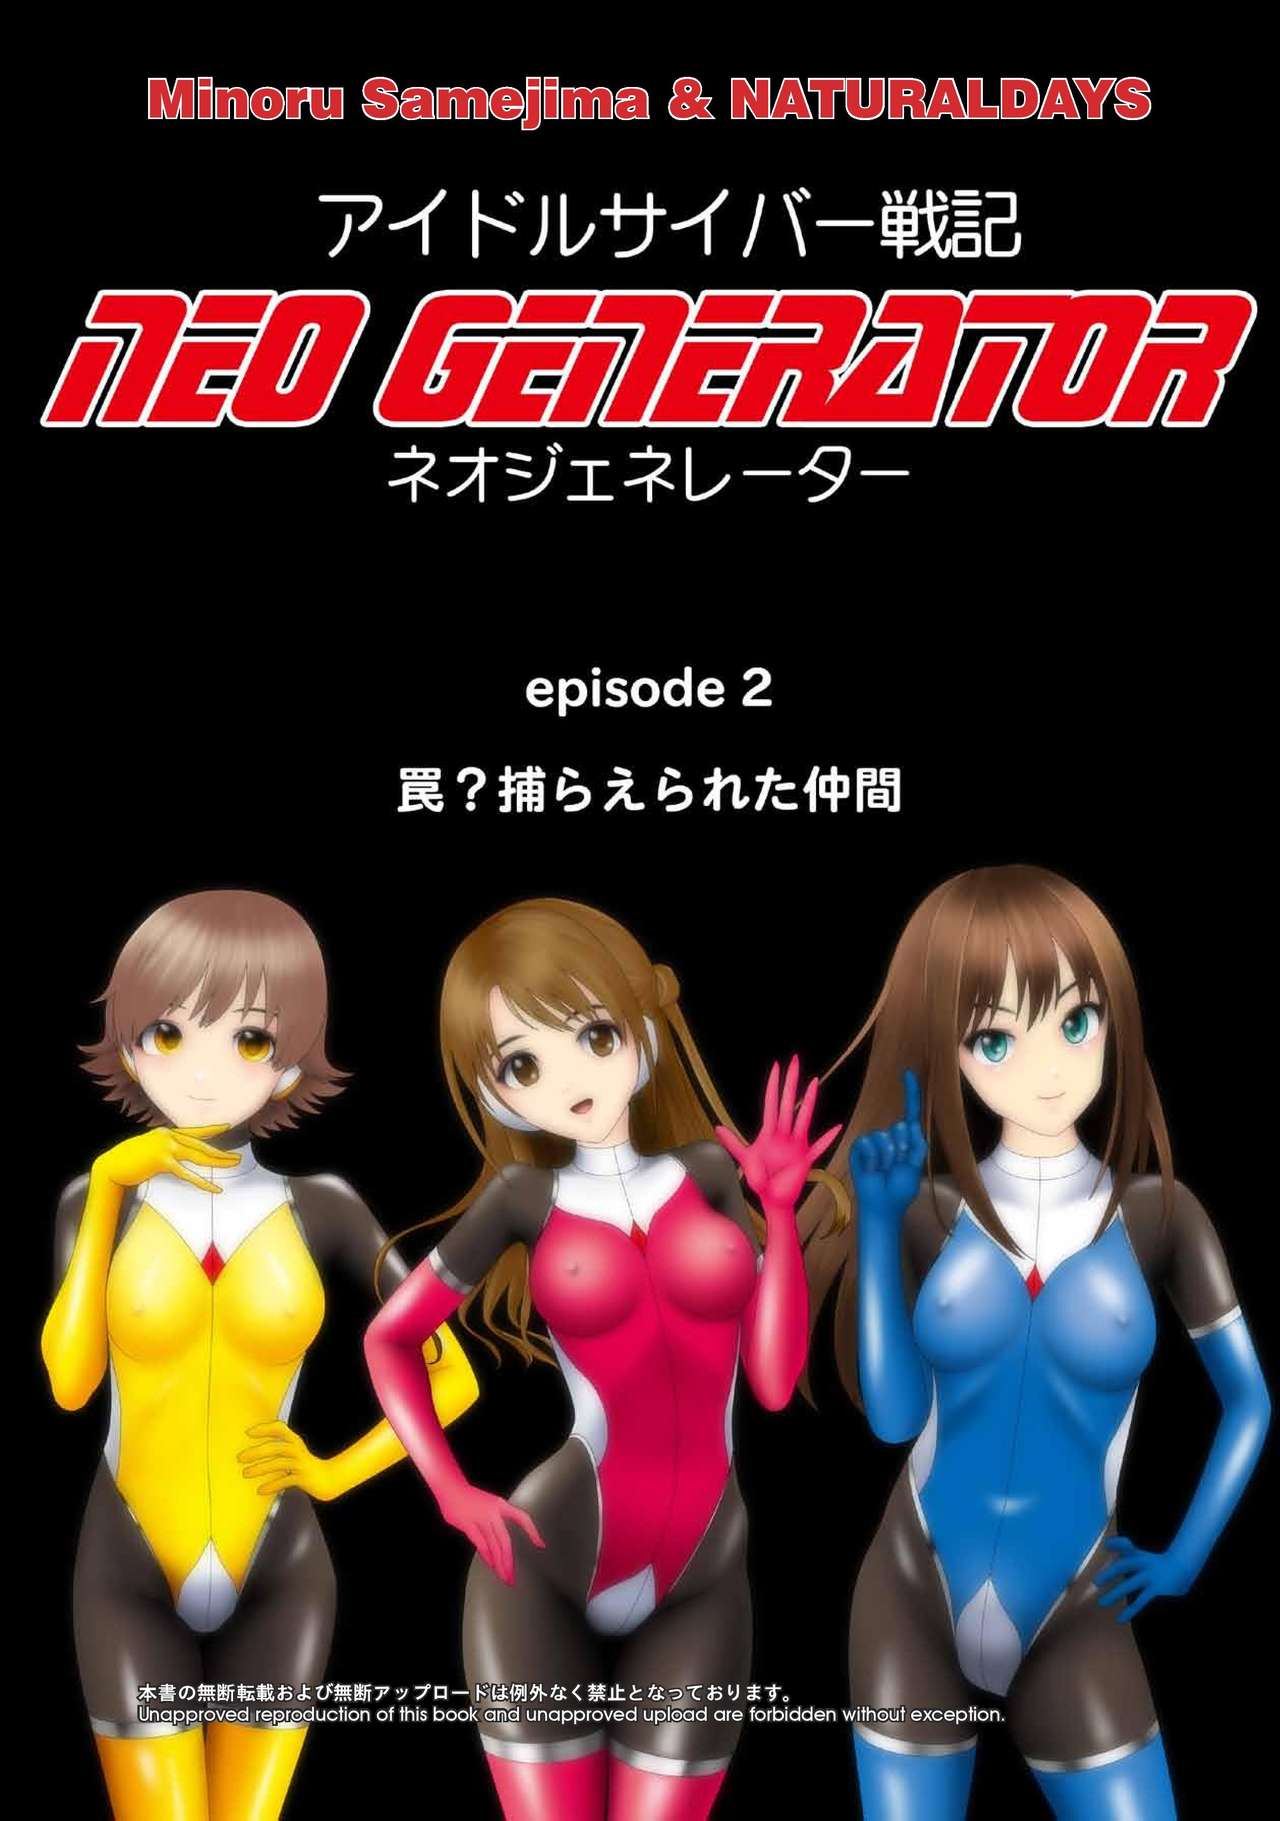 Idol Cyber Battle NEO GENERATOR episode 2 Wana? Torae rareta nakama page 1 full